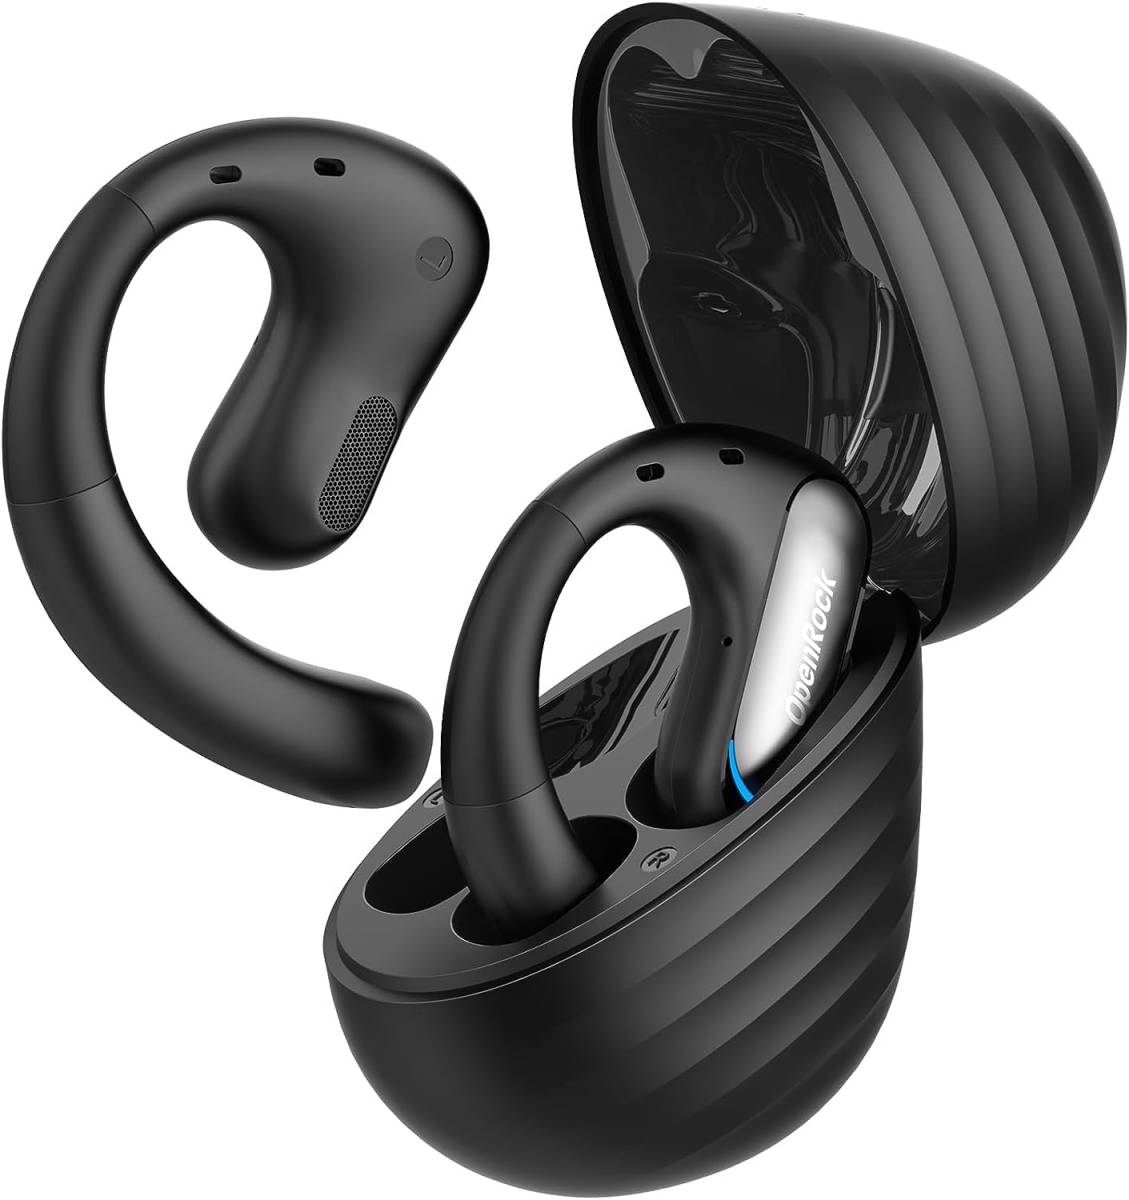  OpenRock Pro Bluetoothイヤホン 耳を塞がない 低音強化 オープンイヤー イヤホン 非骨伝導 16.2mmドライバーの画像1